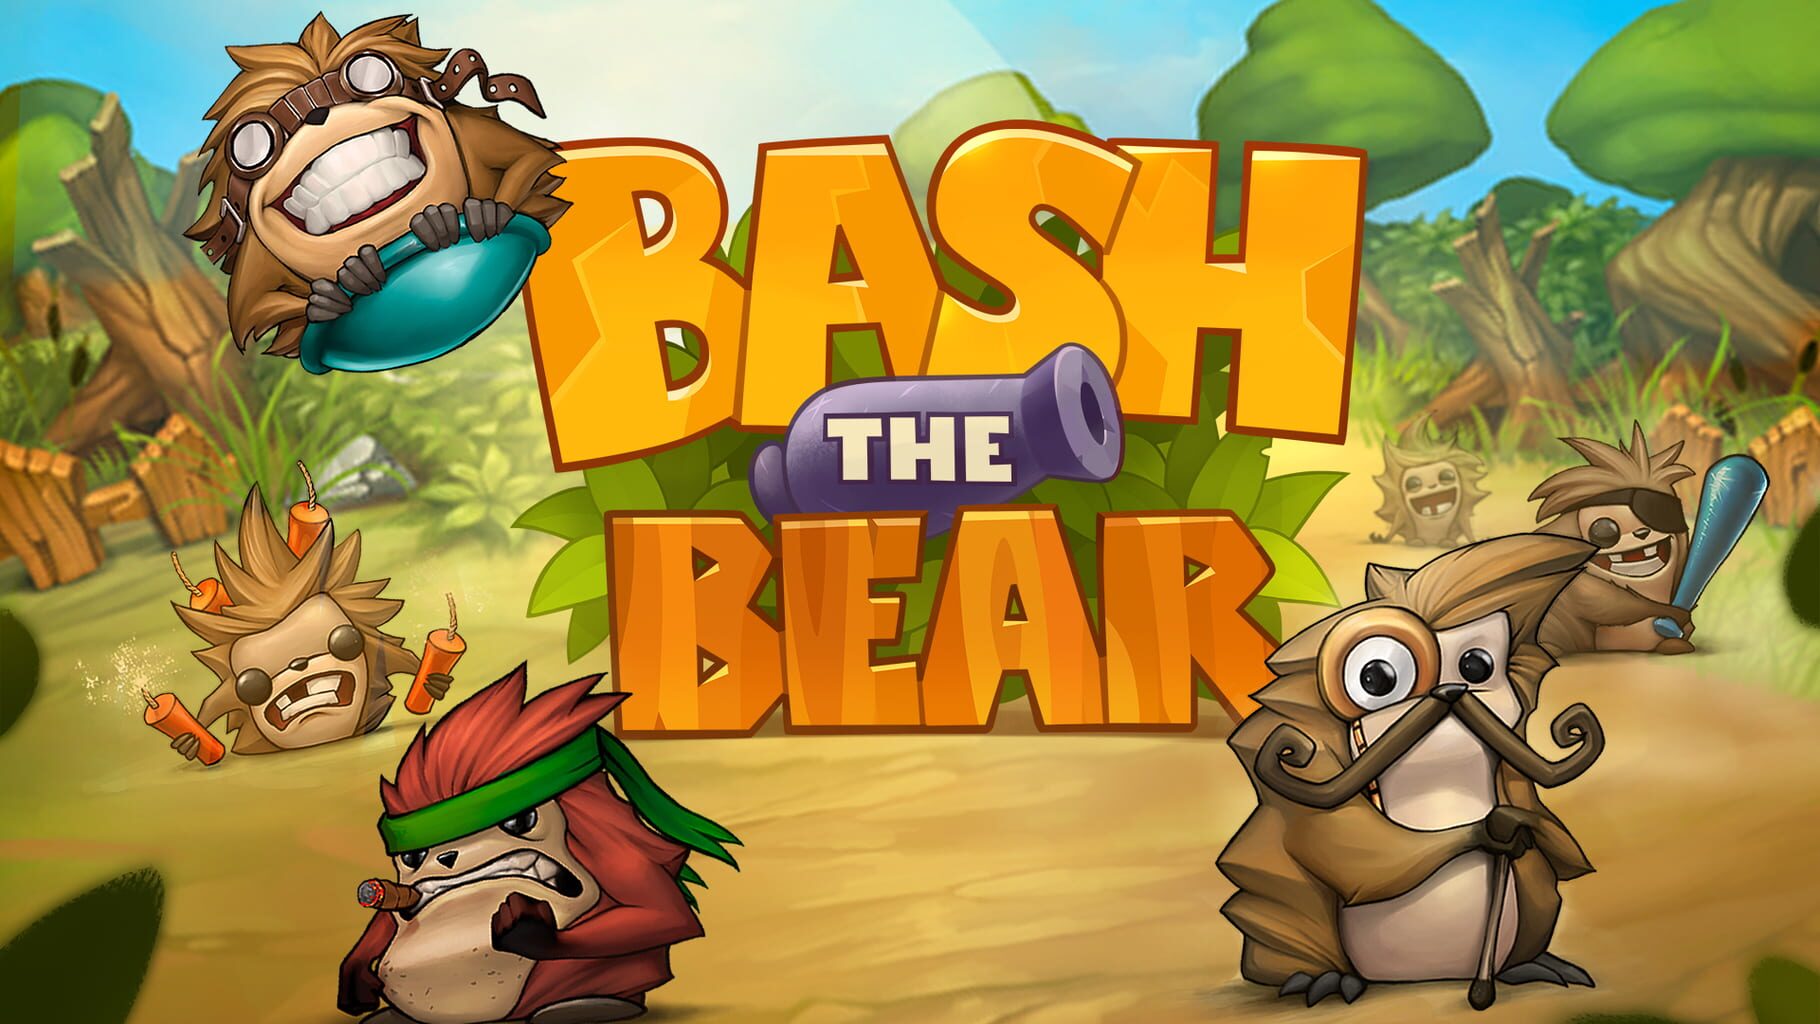 Bash the Bear artwork